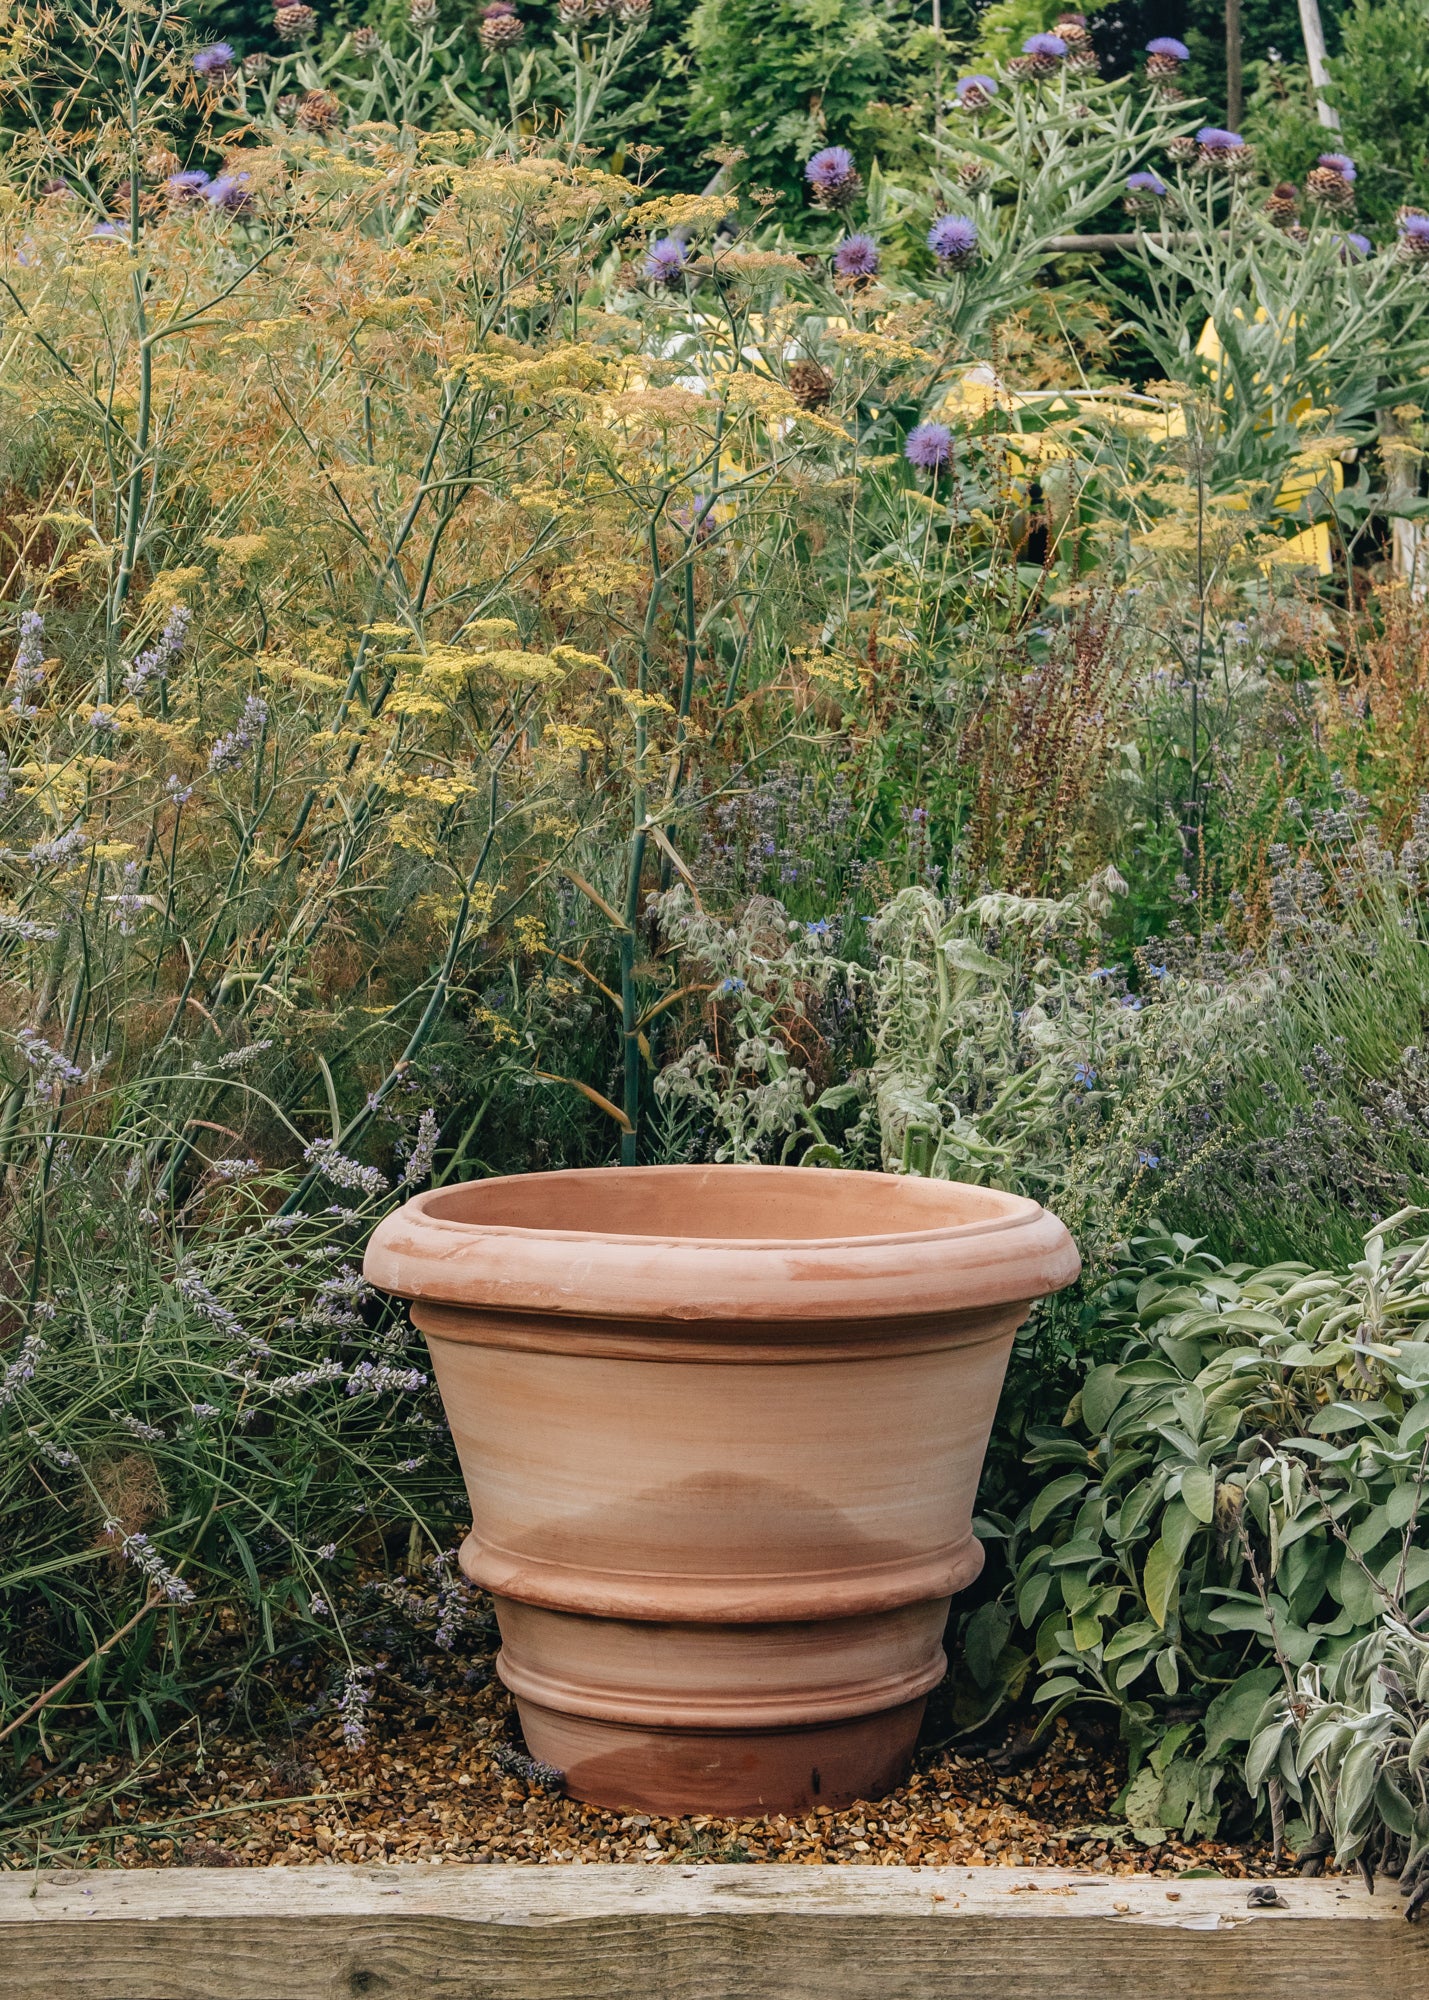 Large Terracotta pots